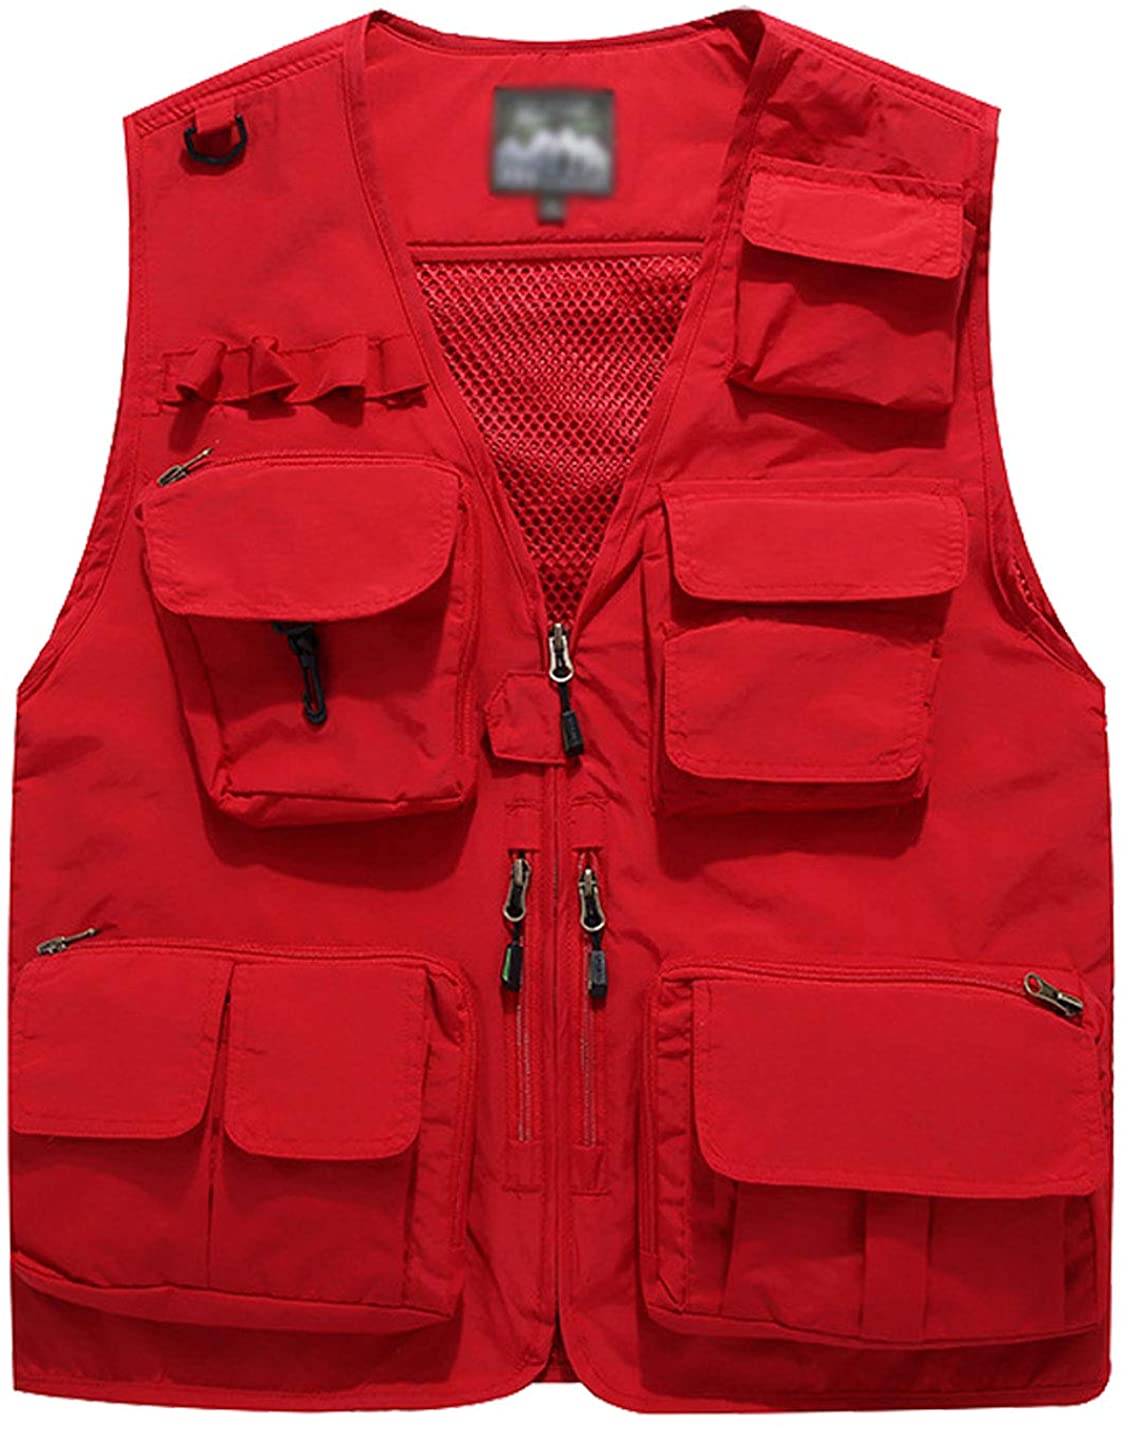 Flygo Men's Casual Lightweight Outdoor Travel Fishing Vest Jacket